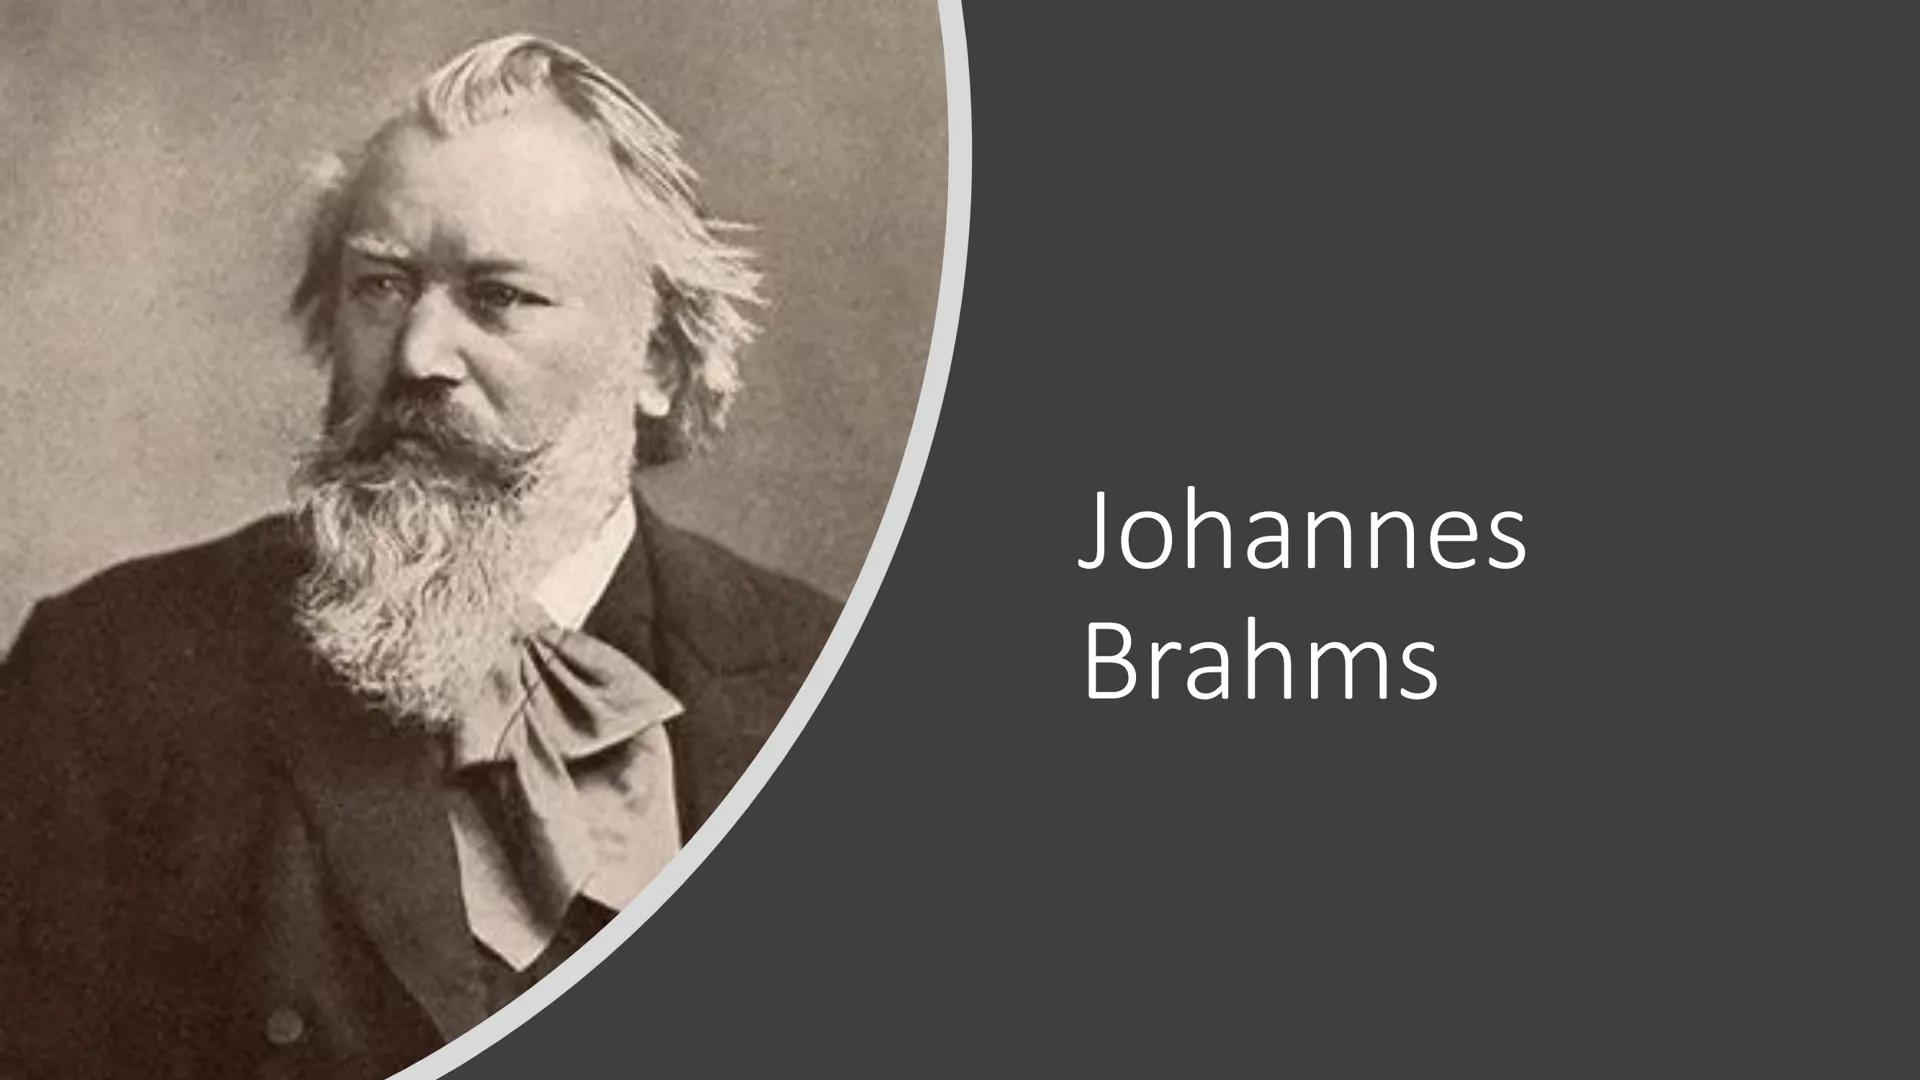 Johannes
Brahms Inhalt
Allgemeines
Kindheit
• Karriere
Umzug nach Wien
Werke
• Auszeichnungen
● PP
cresc.
1
HT=
THE
Faab
4.
TN-
Allgemeines
